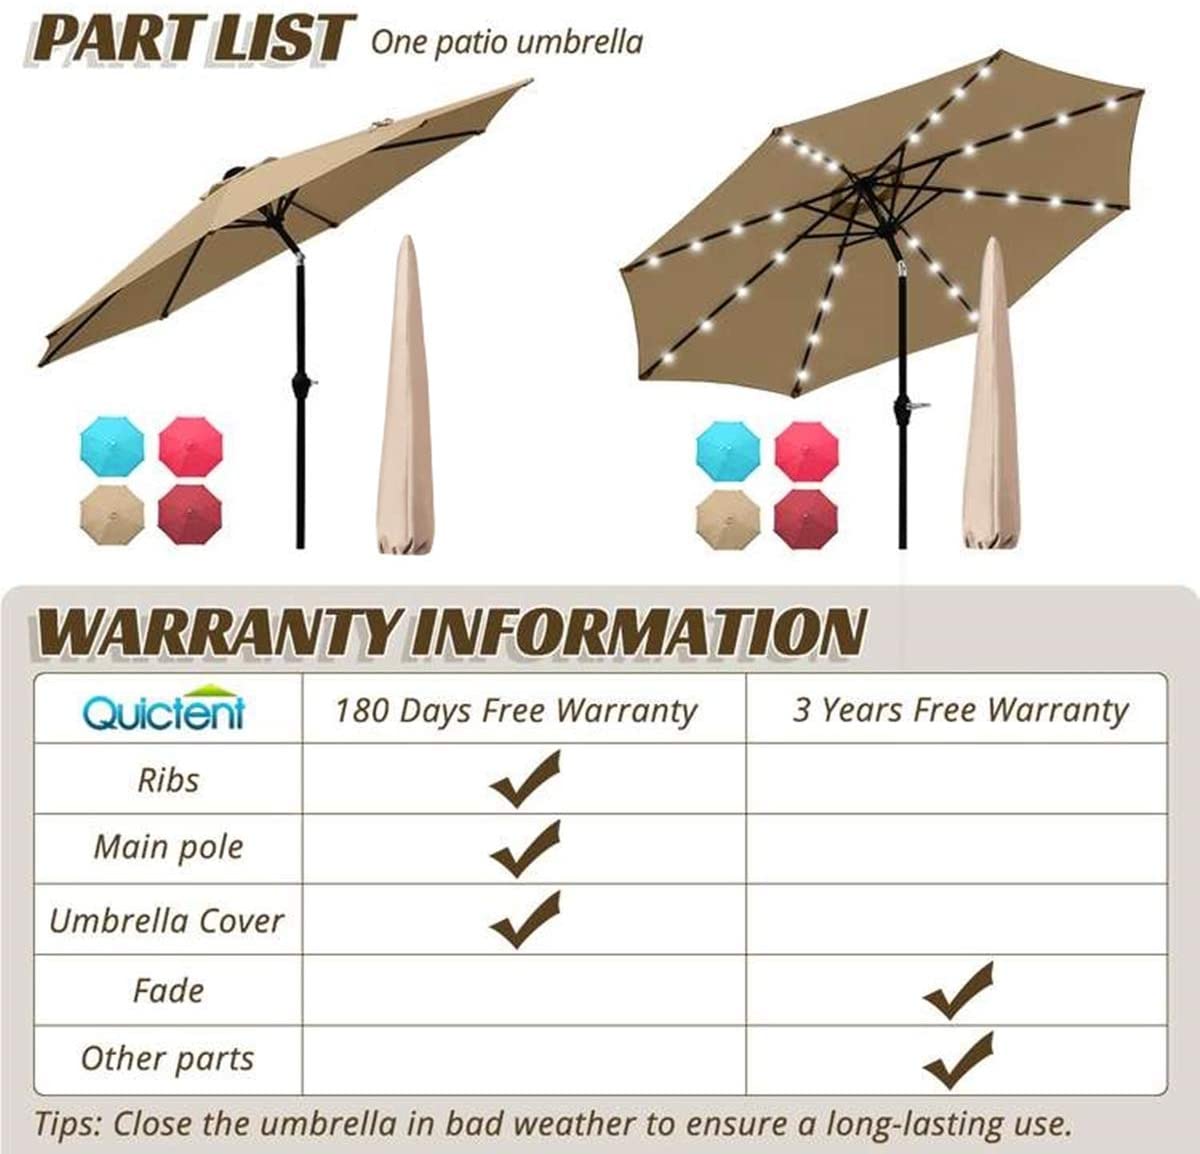 9tf Patio umbrella Warranty#color_tan